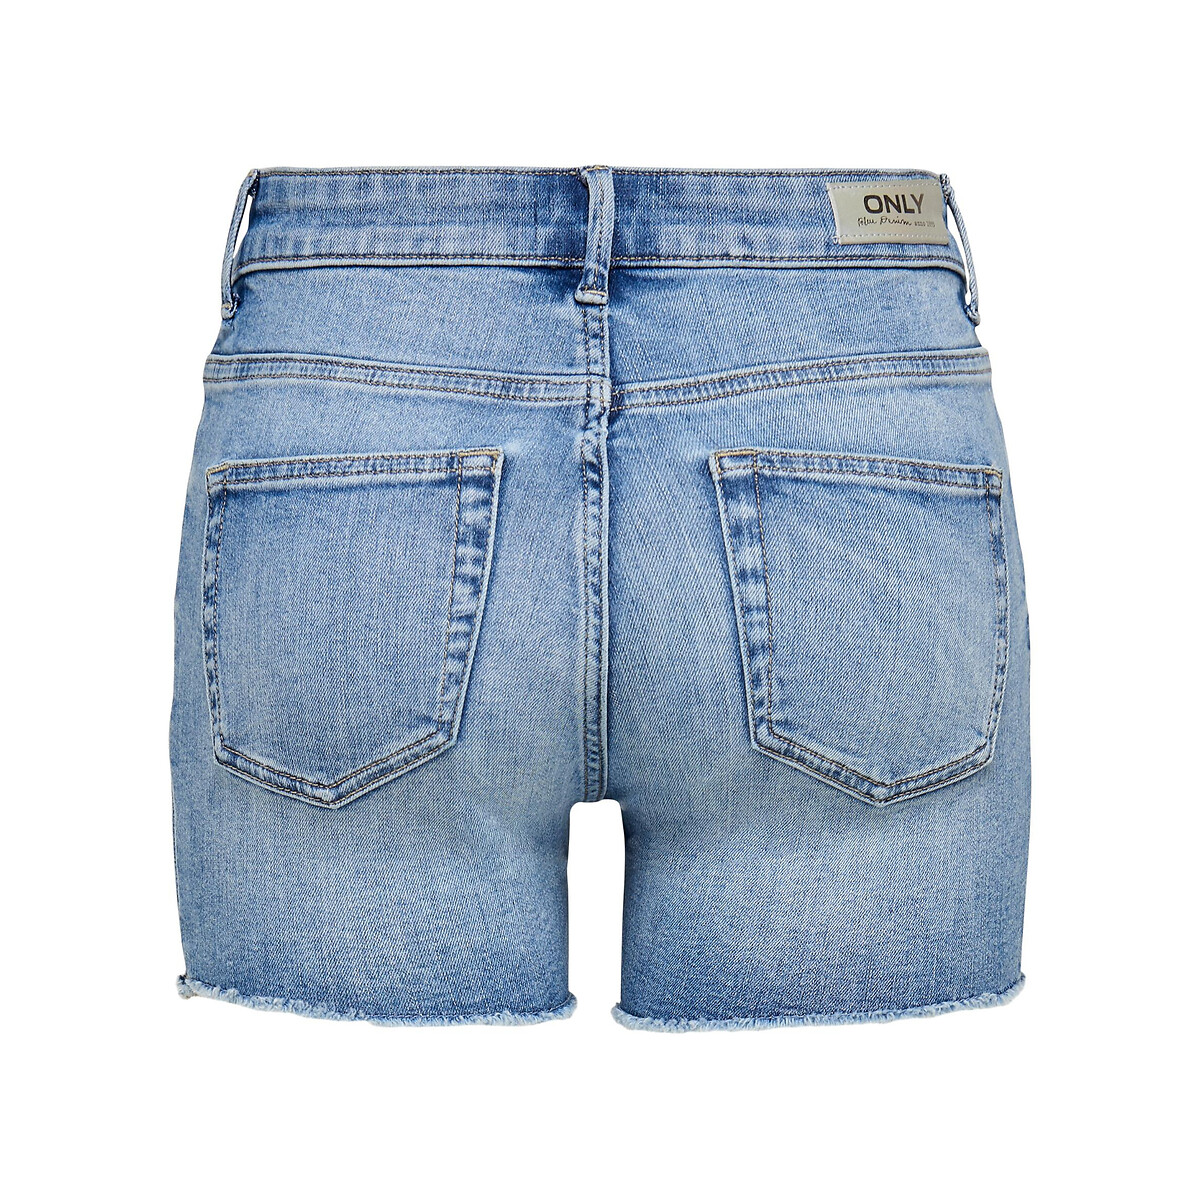 Шорты Из джинсовой ткани 3XL синий LaRedoute, размер 3XL - фото 5